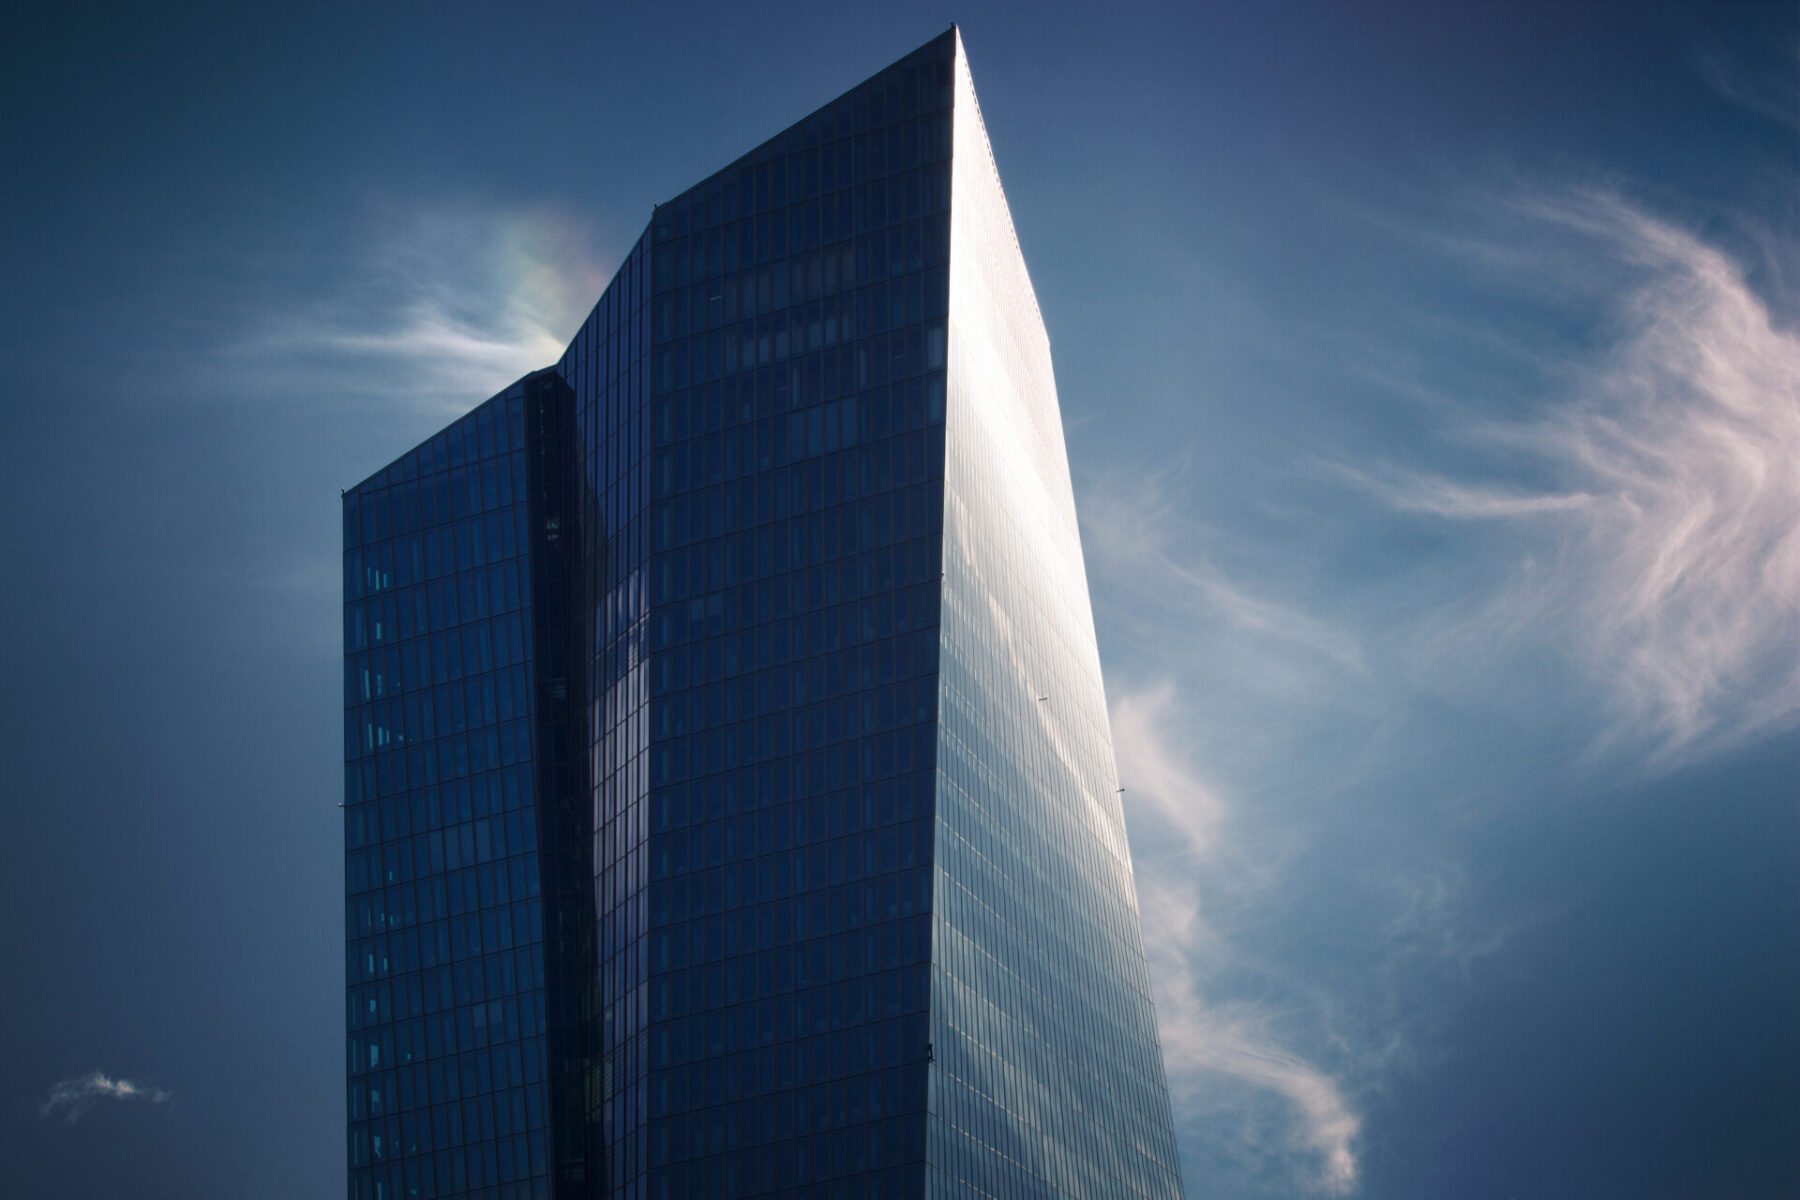 Europäische Zentralbank Tower Frankfurt am Main Jürgen Reichel Architekturfotografie Architekturfotograf Jürgen Reichel